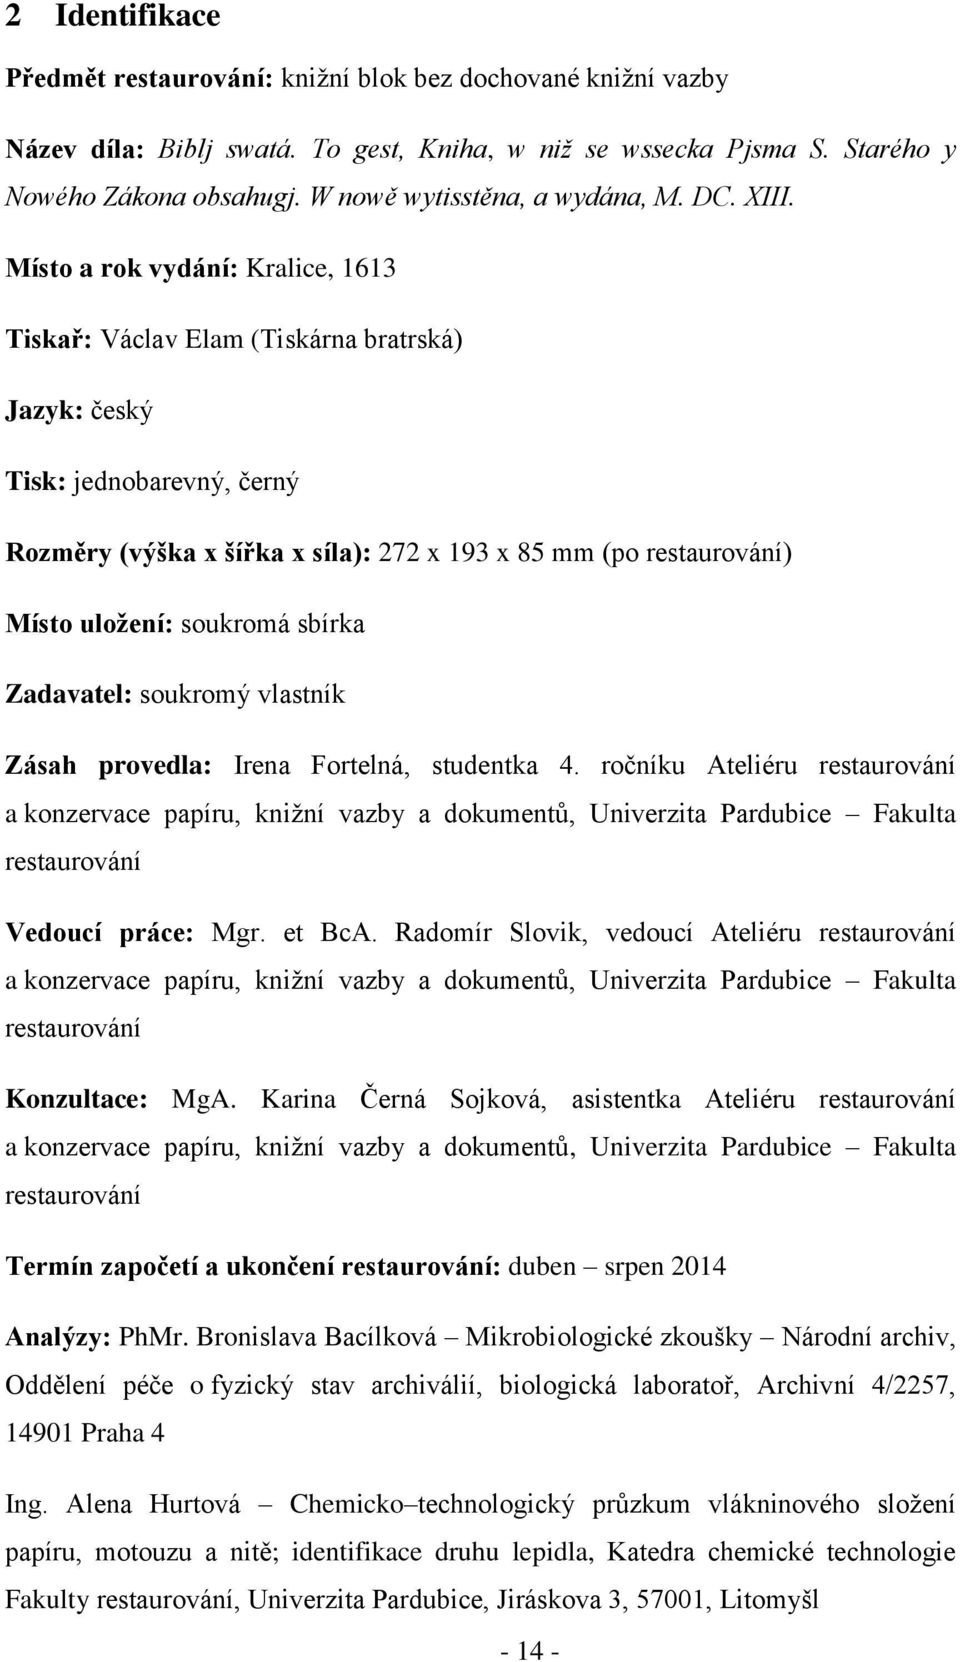 Místo a rok vydání: Kralice, 1613 Tiskař: Václav Elam (Tiskárna bratrská) Jazyk: český Tisk: jednobarevný, černý Rozměry (výška x šířka x síla): 272 x 193 x 85 mm (po restaurování) Místo uložení: